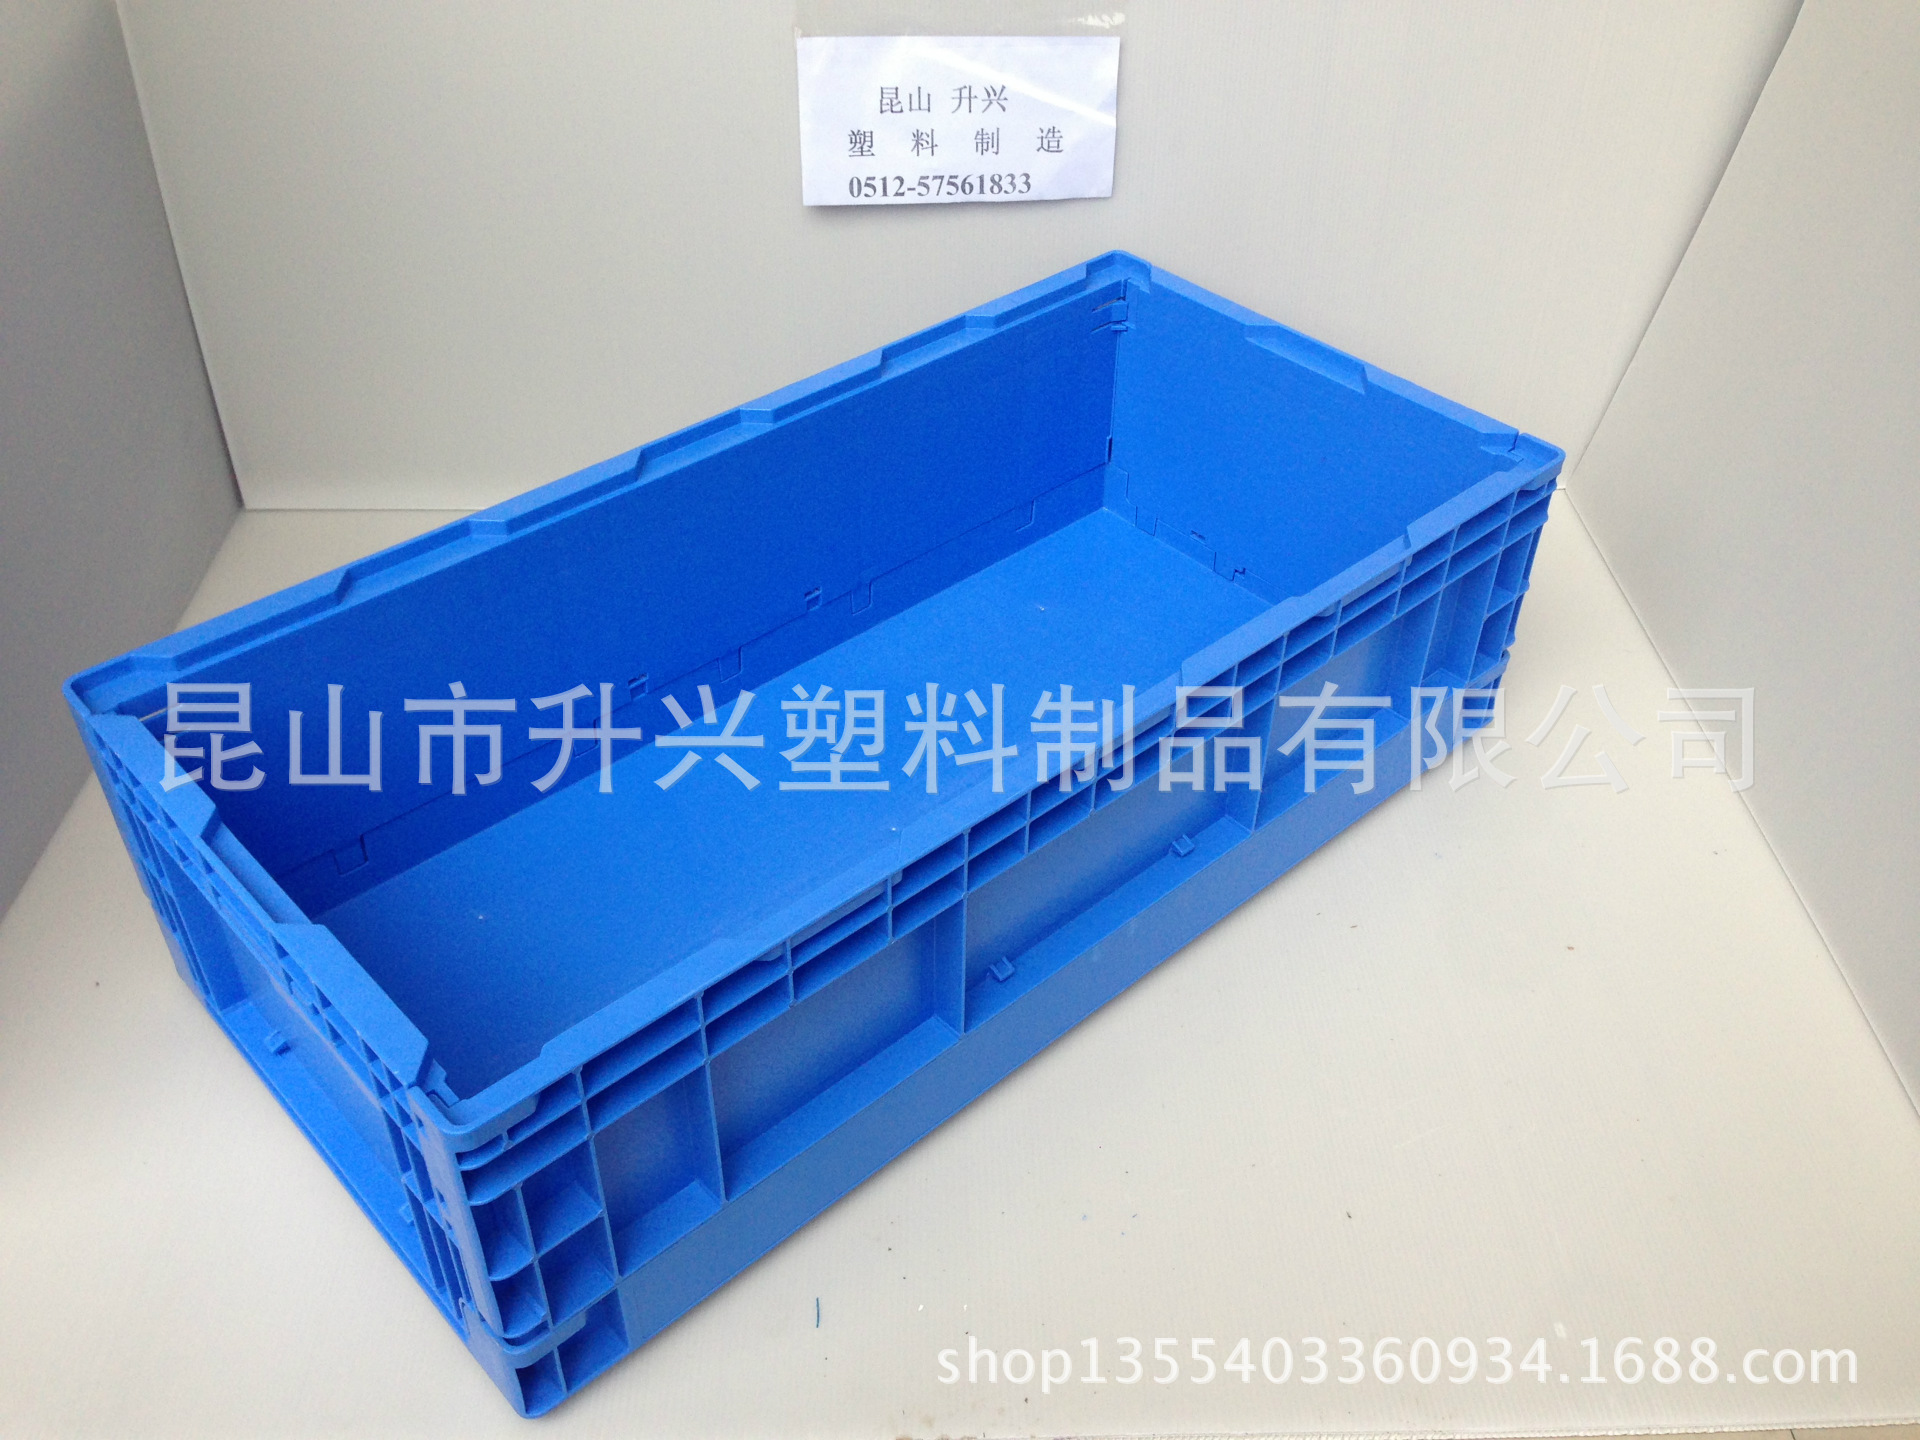 【厂家直销武汉S308折叠塑料箱 1100-365-21